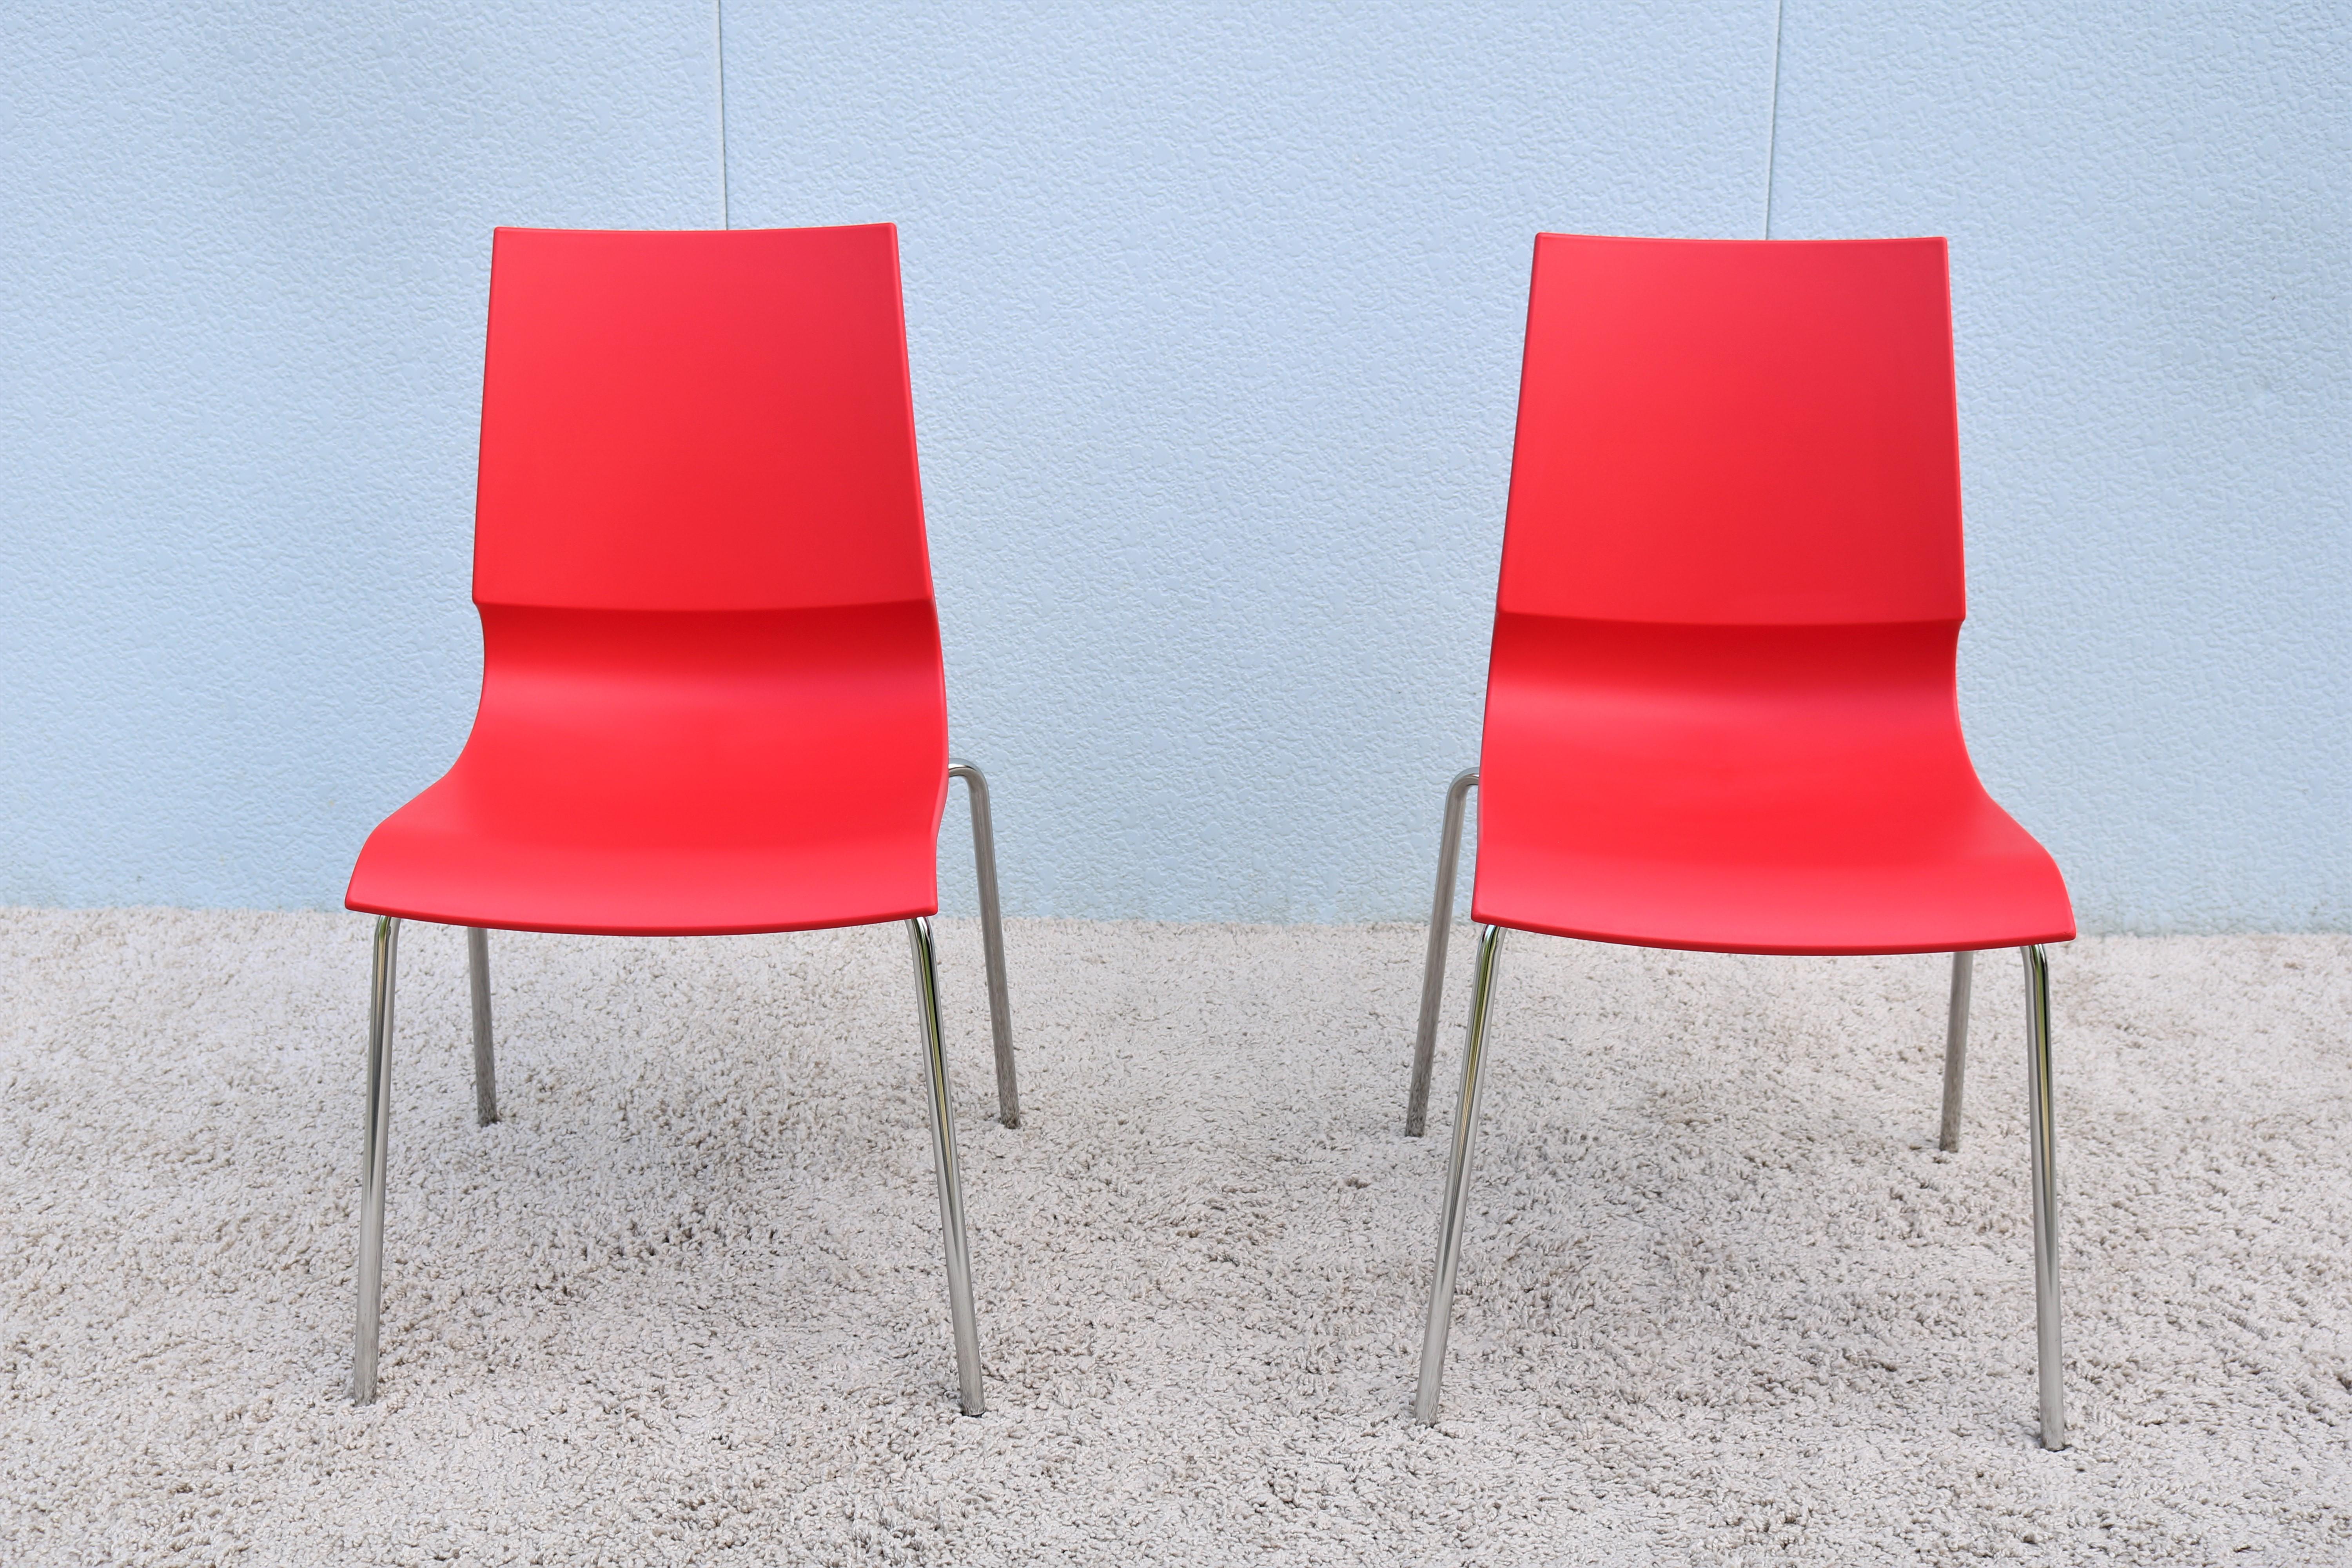 Le sedie Ricciolina sono eleganti e funzionali. 
Il caratteristico collegamento curvo tra la seduta e lo schienale conferisce alla sedia flessibilità ed ergonomia. 
Il design leggero e la funzione di impilamento lo rendono adatto alle situazioni e